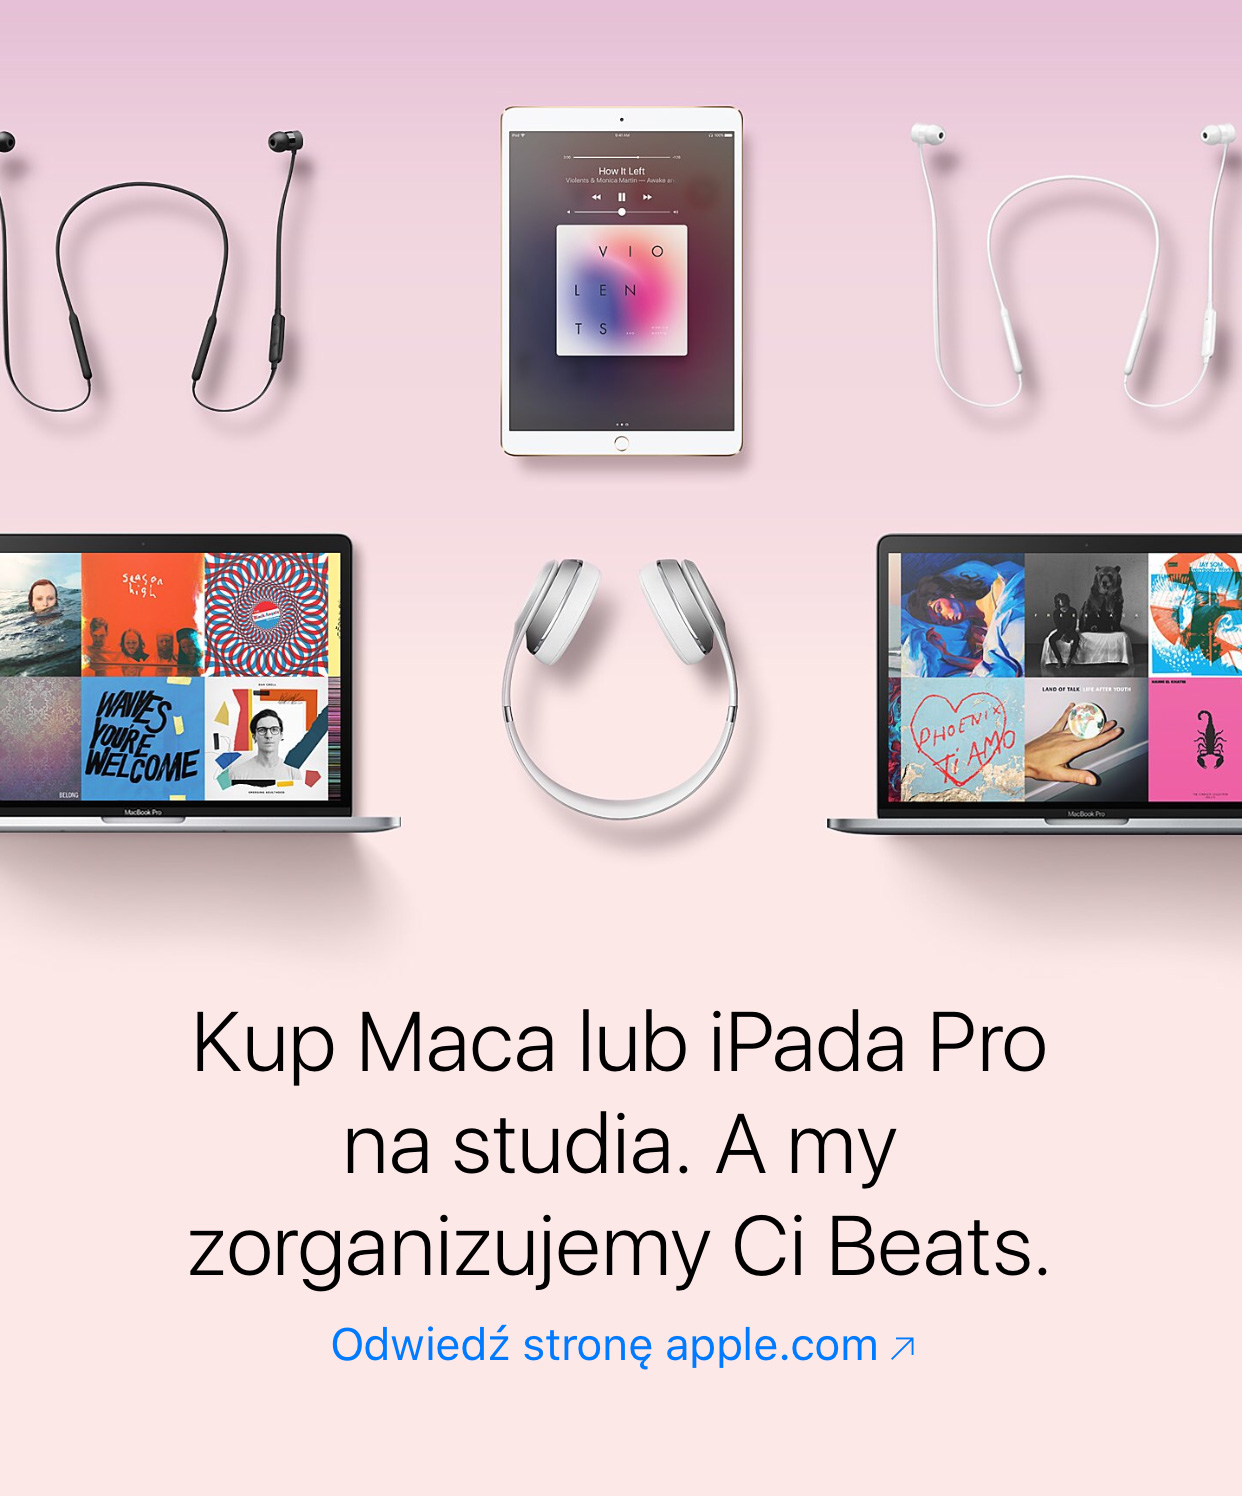 Słuchawki Beats gratis przy zakupie Maca lub iPada Pro